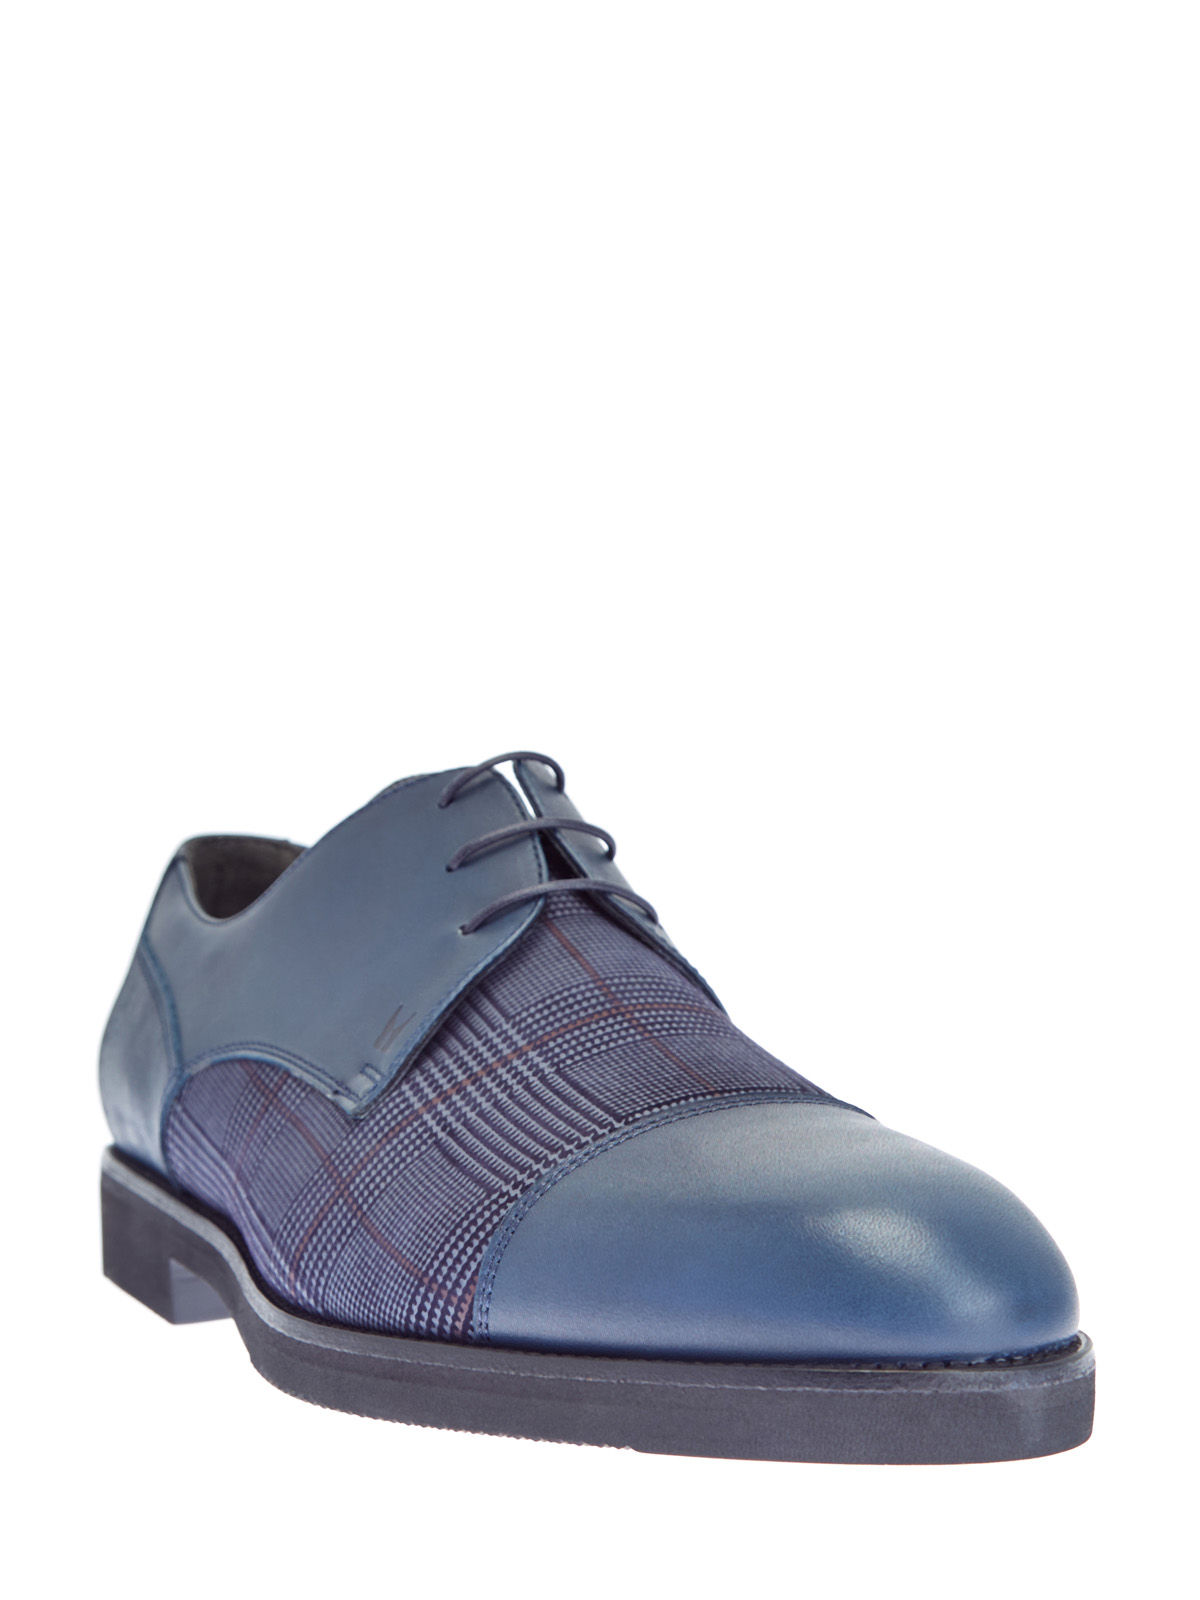 Кожаные туфли-дерби с принтом «Принц Уэльский» MORESCHI, цвет синий, размер 40.5;41;42;42.5;43;43.5;44 - фото 3